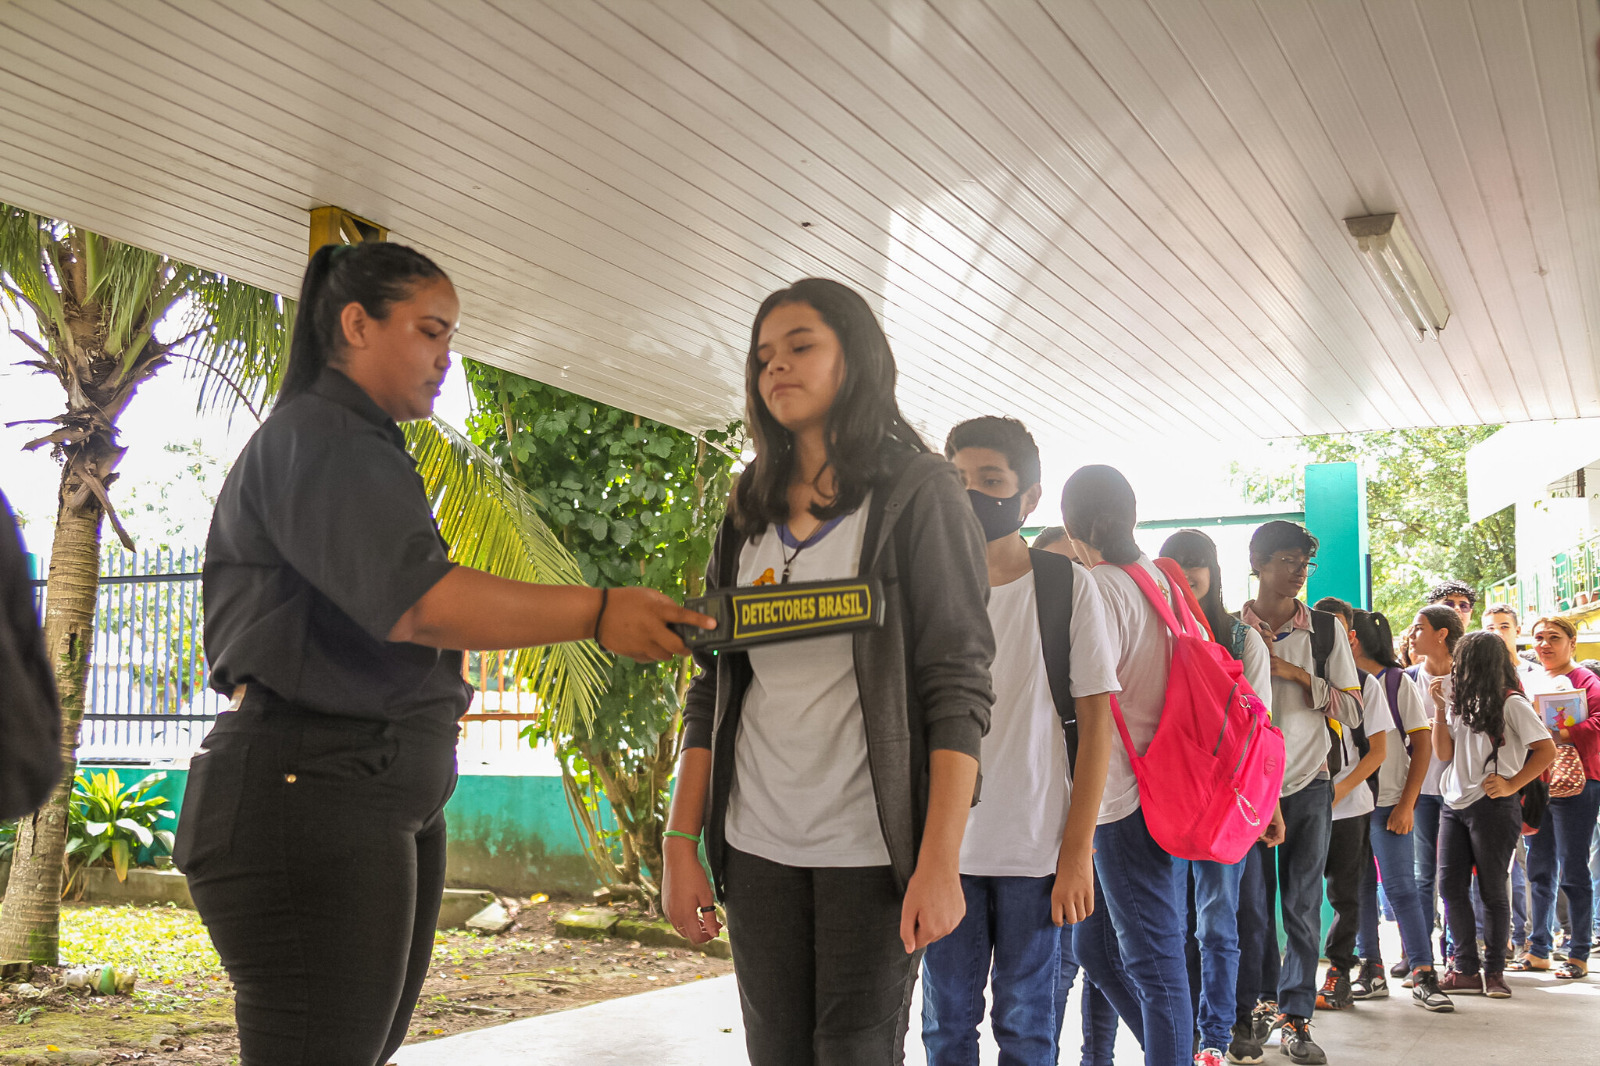 Agentes de portaria aumentam sensação de segurança nas escolas municipais de Manaus